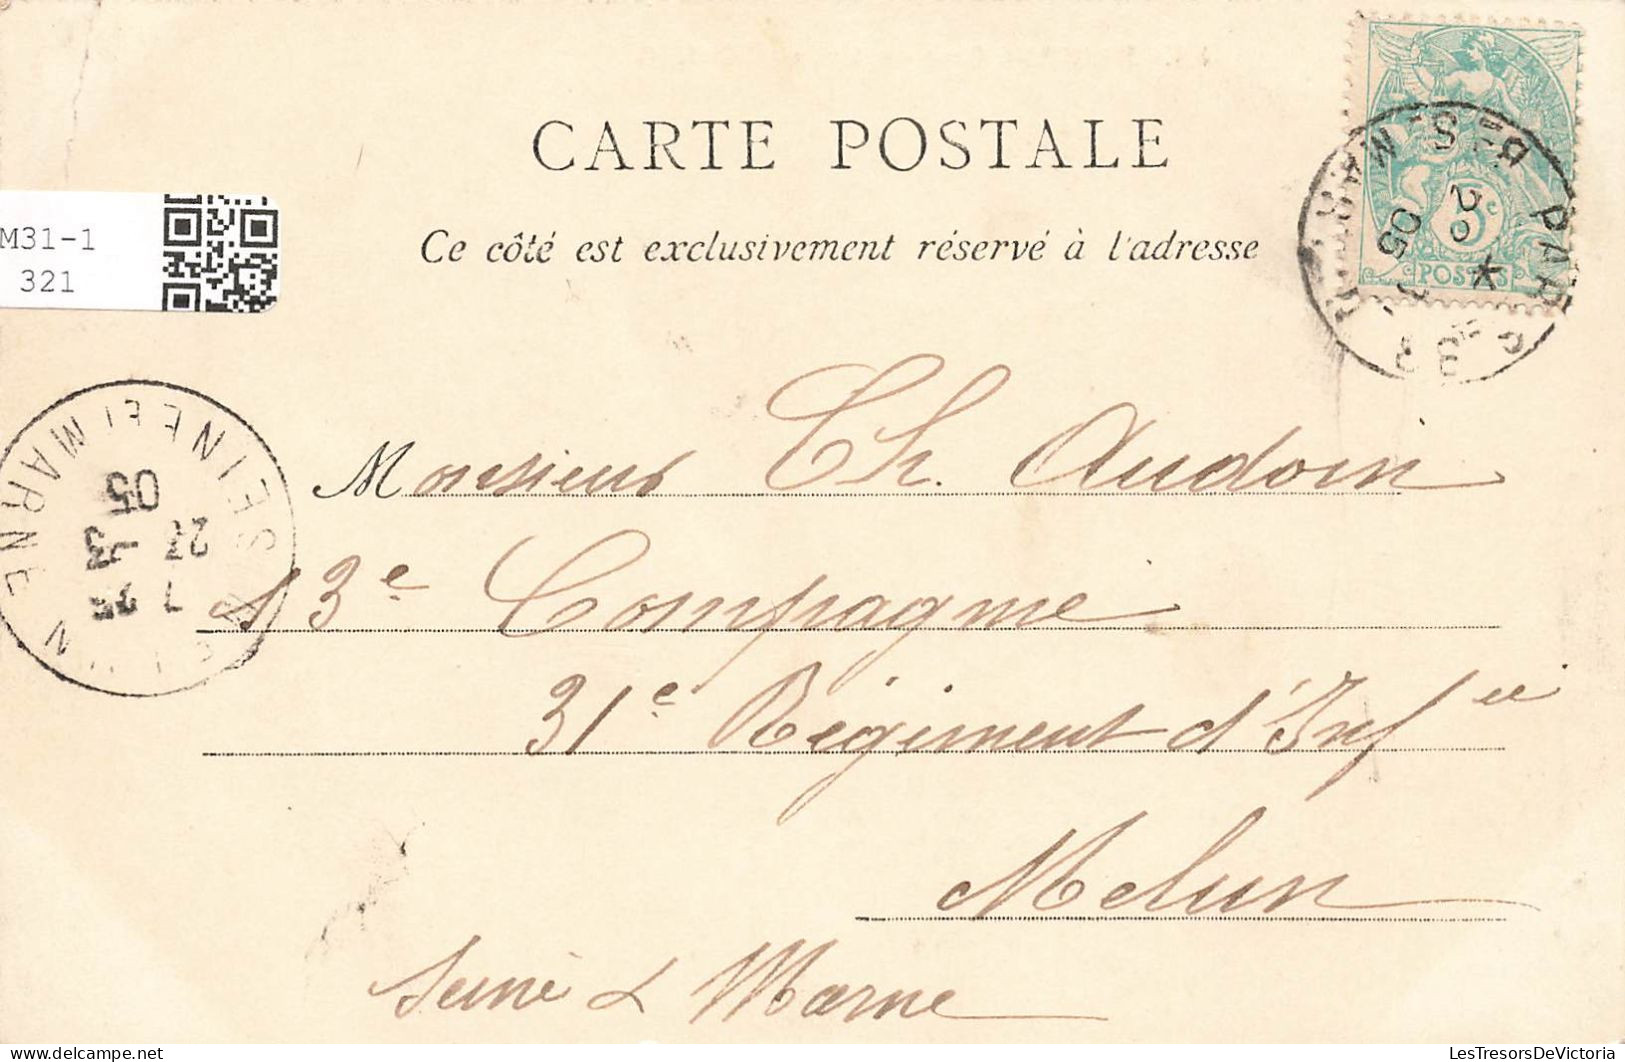 FRANCE - Paris - Vue Générale De La Gare De Lyon - Animé - C.L.C. - Carte Postale Ancienne - Pariser Métro, Bahnhöfe